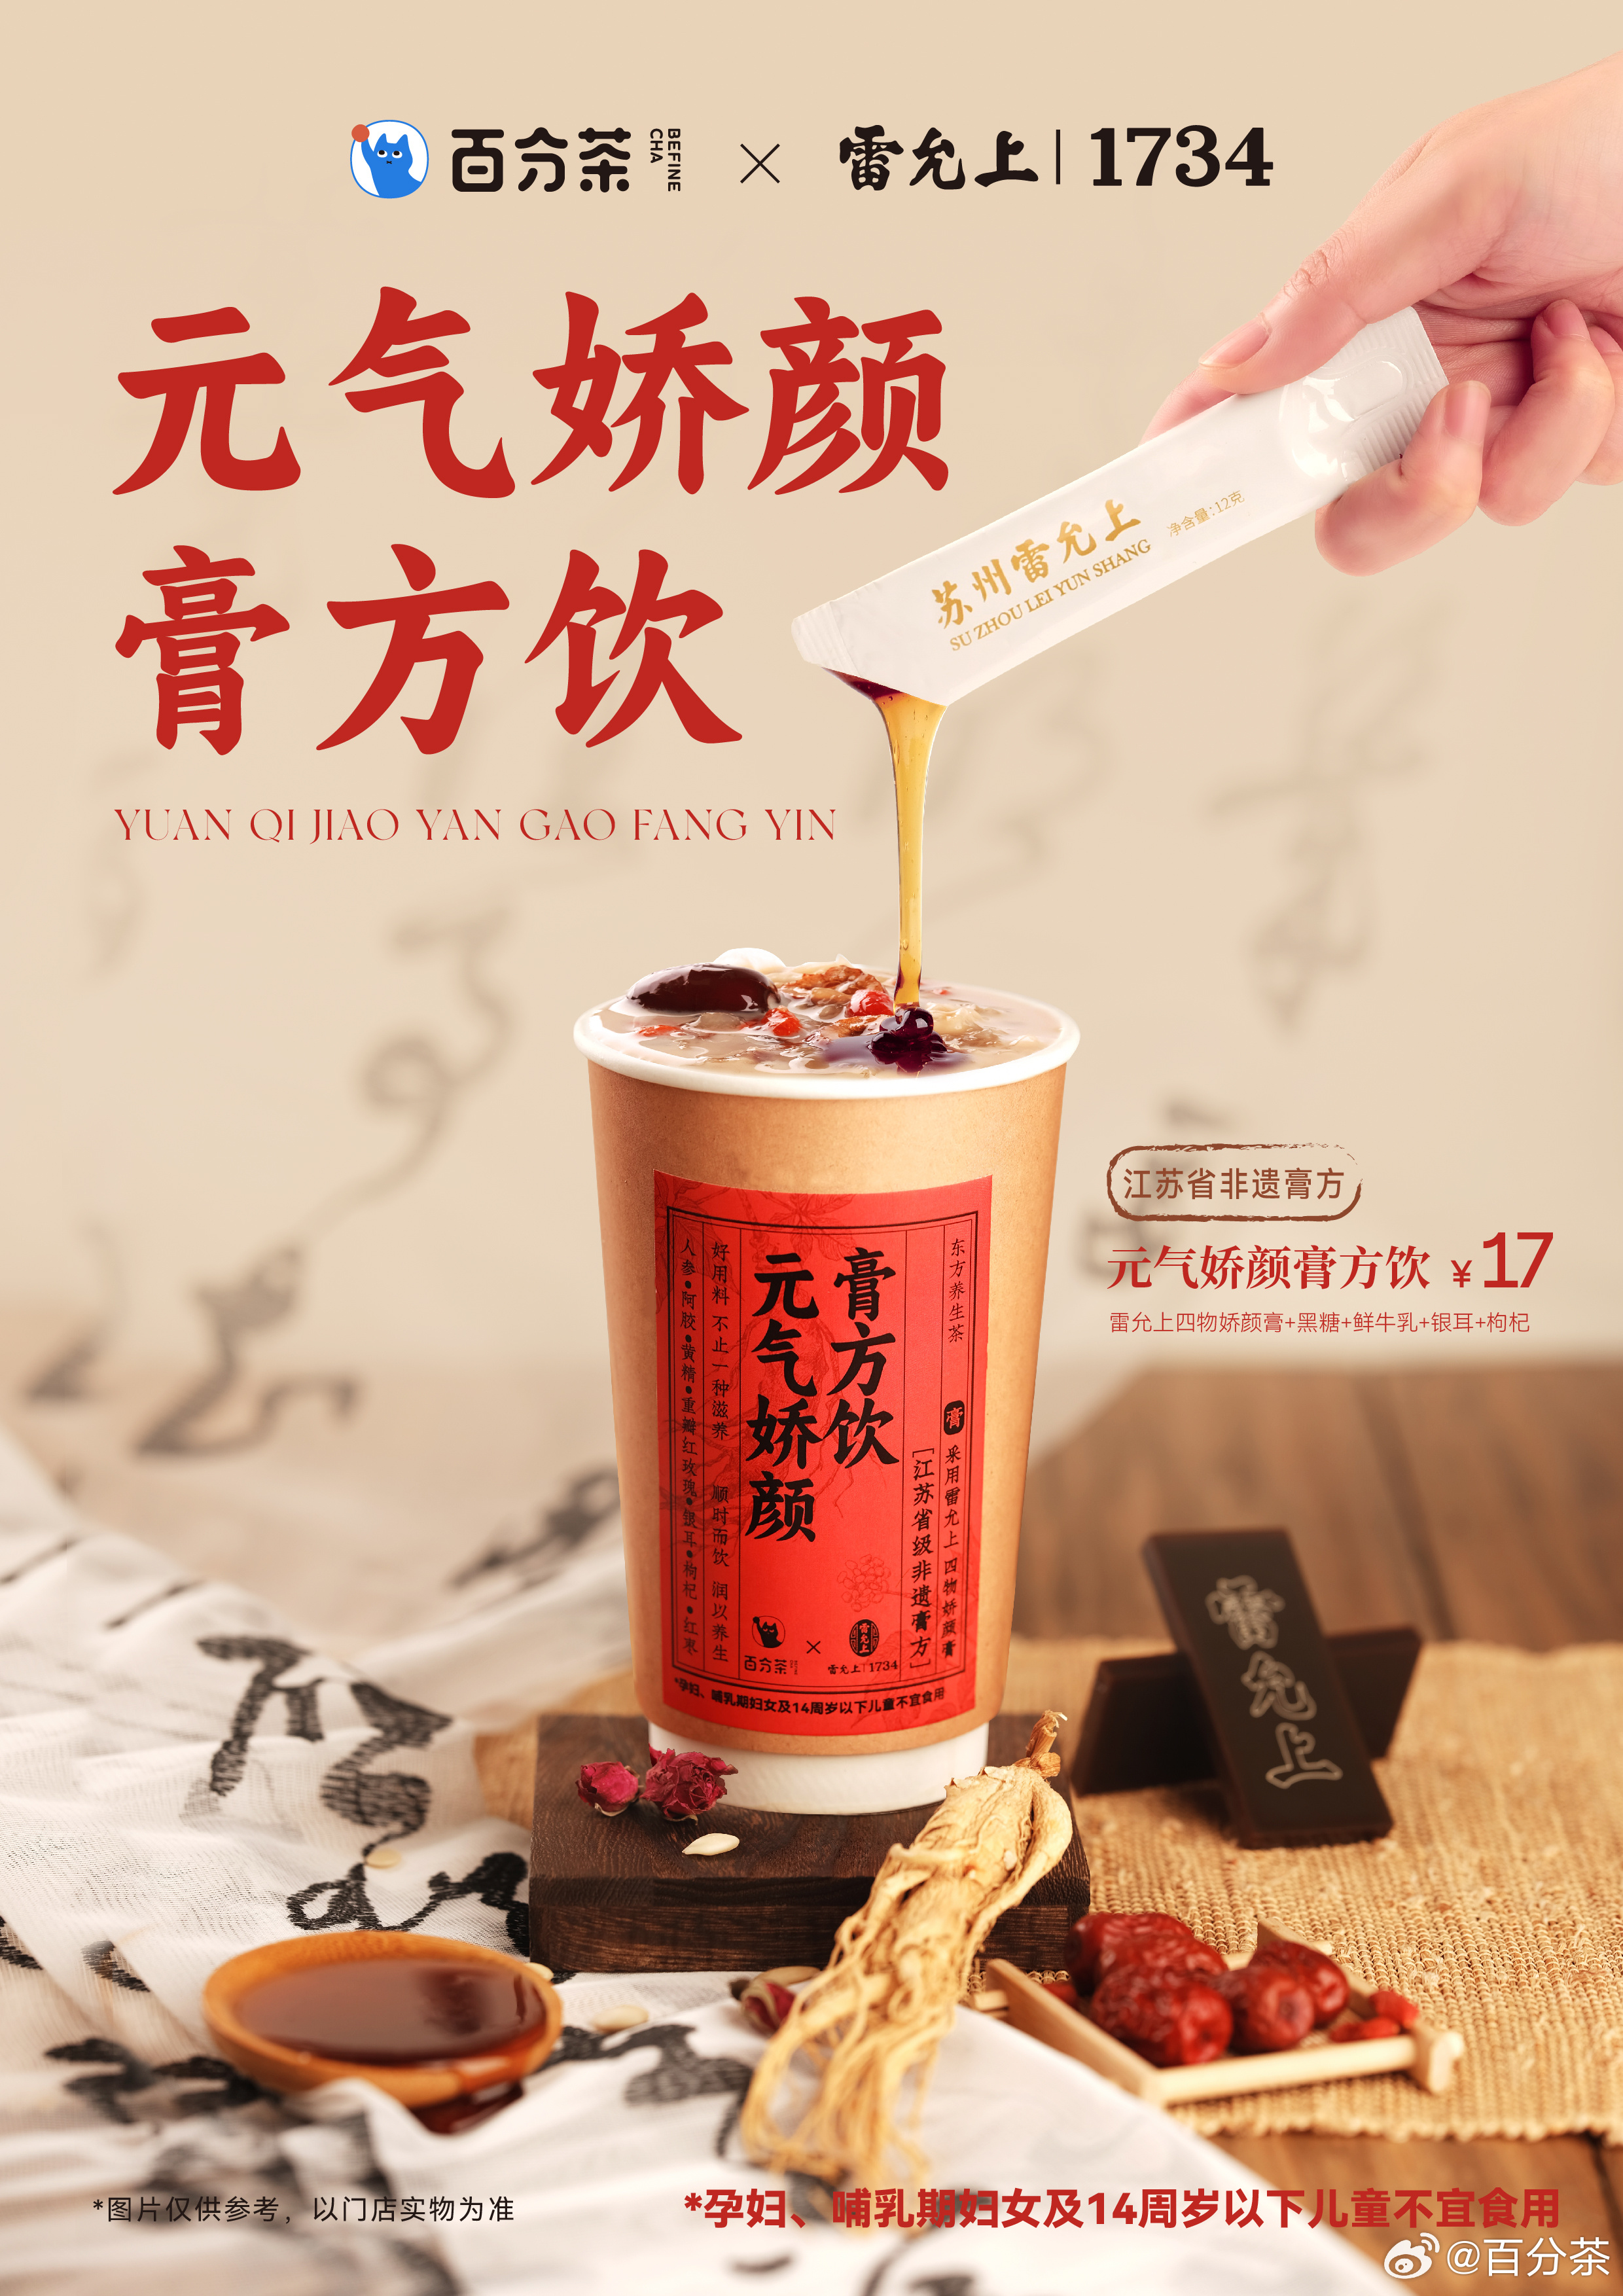 百分茶六周年系列新品“东方味觉”即将上线 | Foodaily每日食品